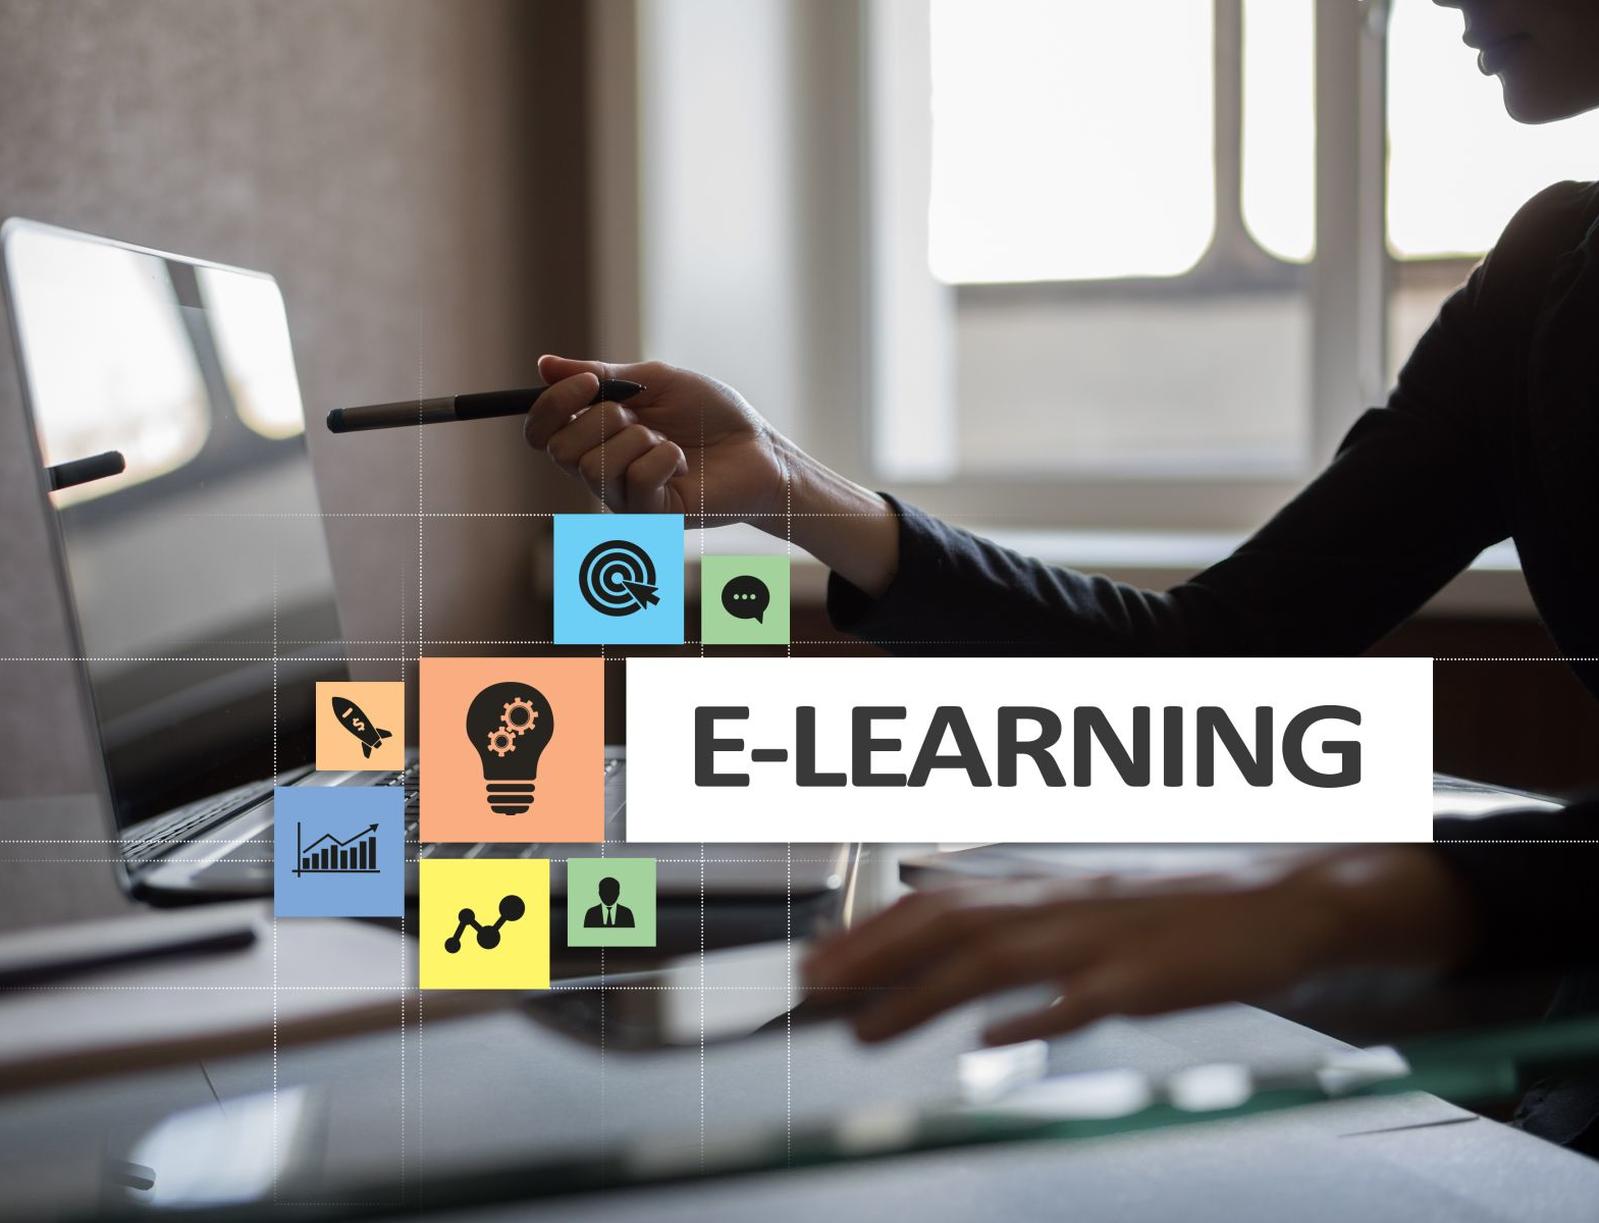 E-learning expert